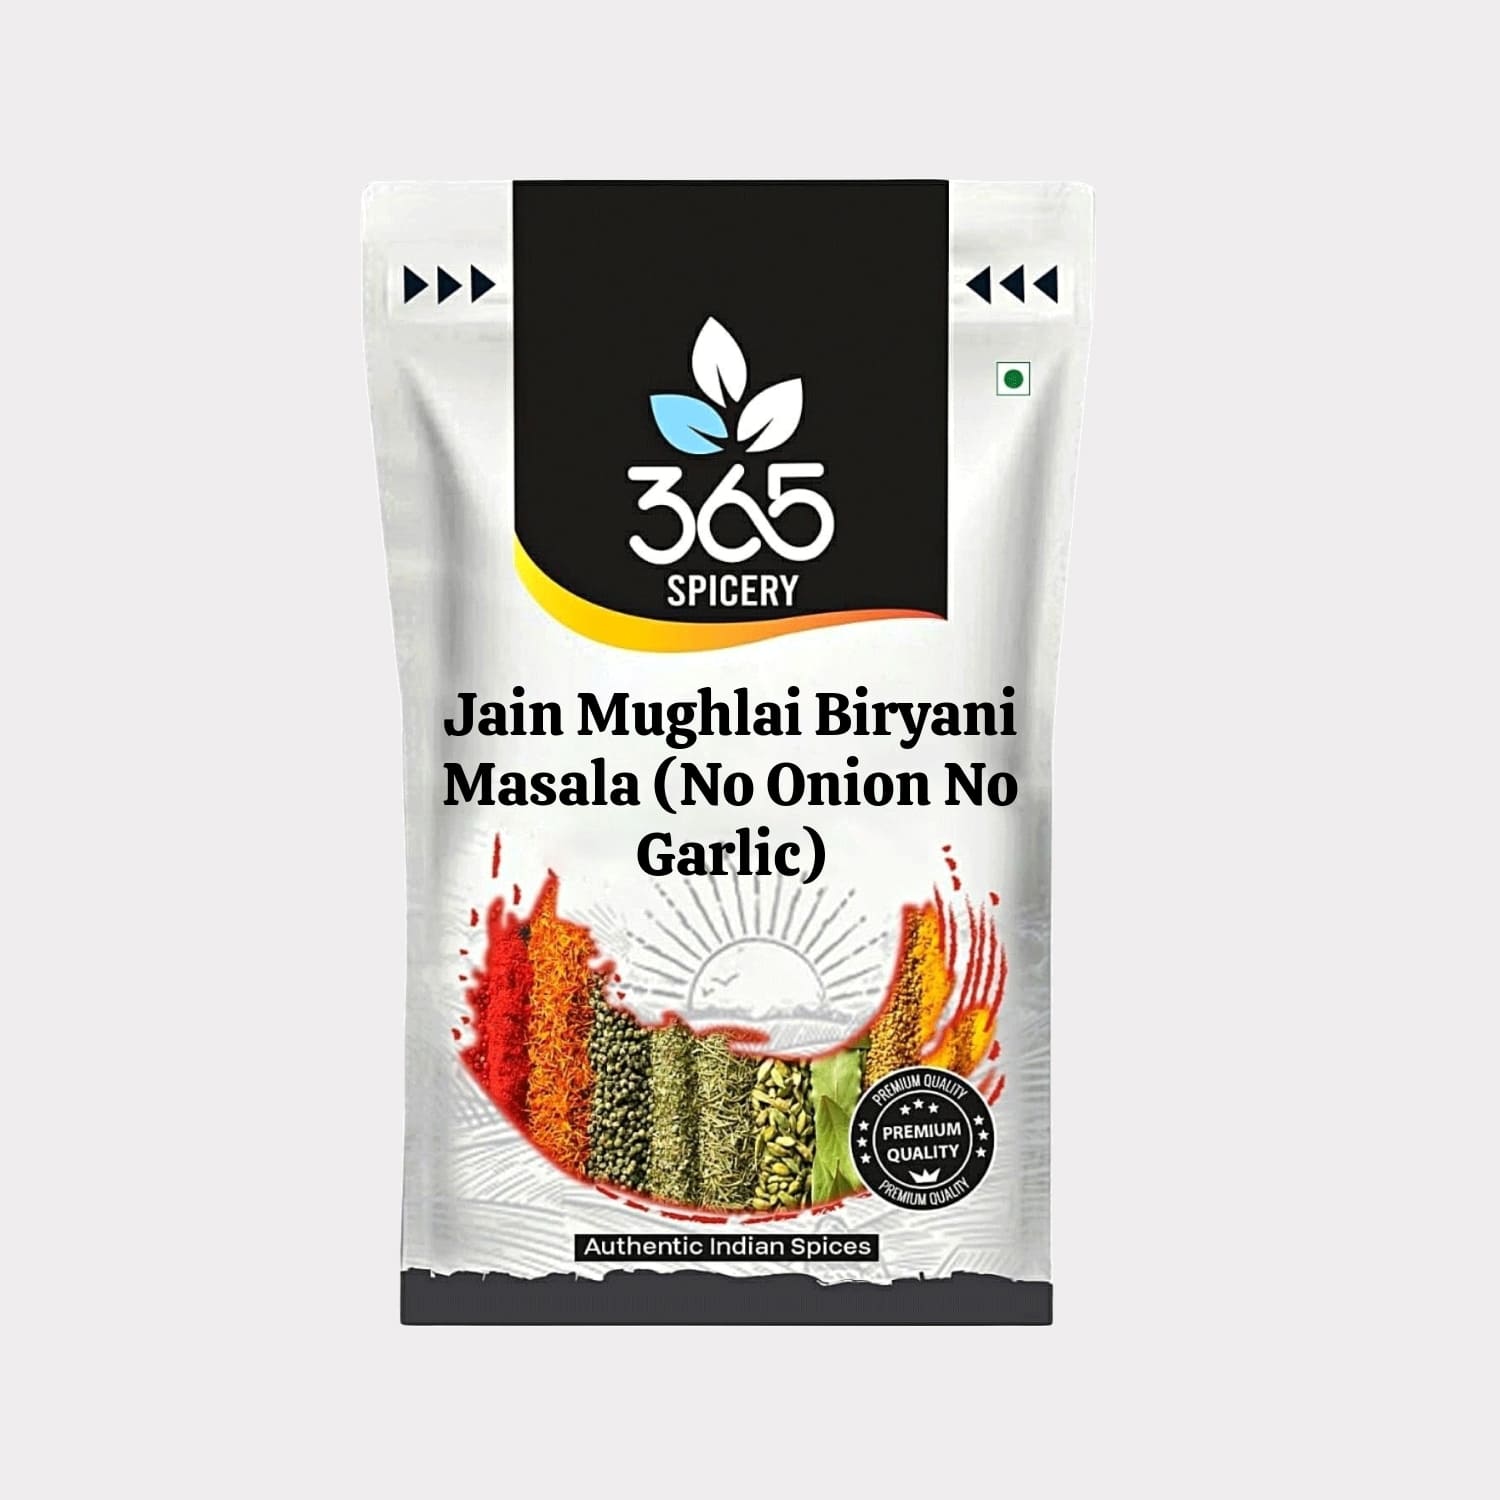 Jain Mughlai Biryani Masala (No Onion No Garlic)